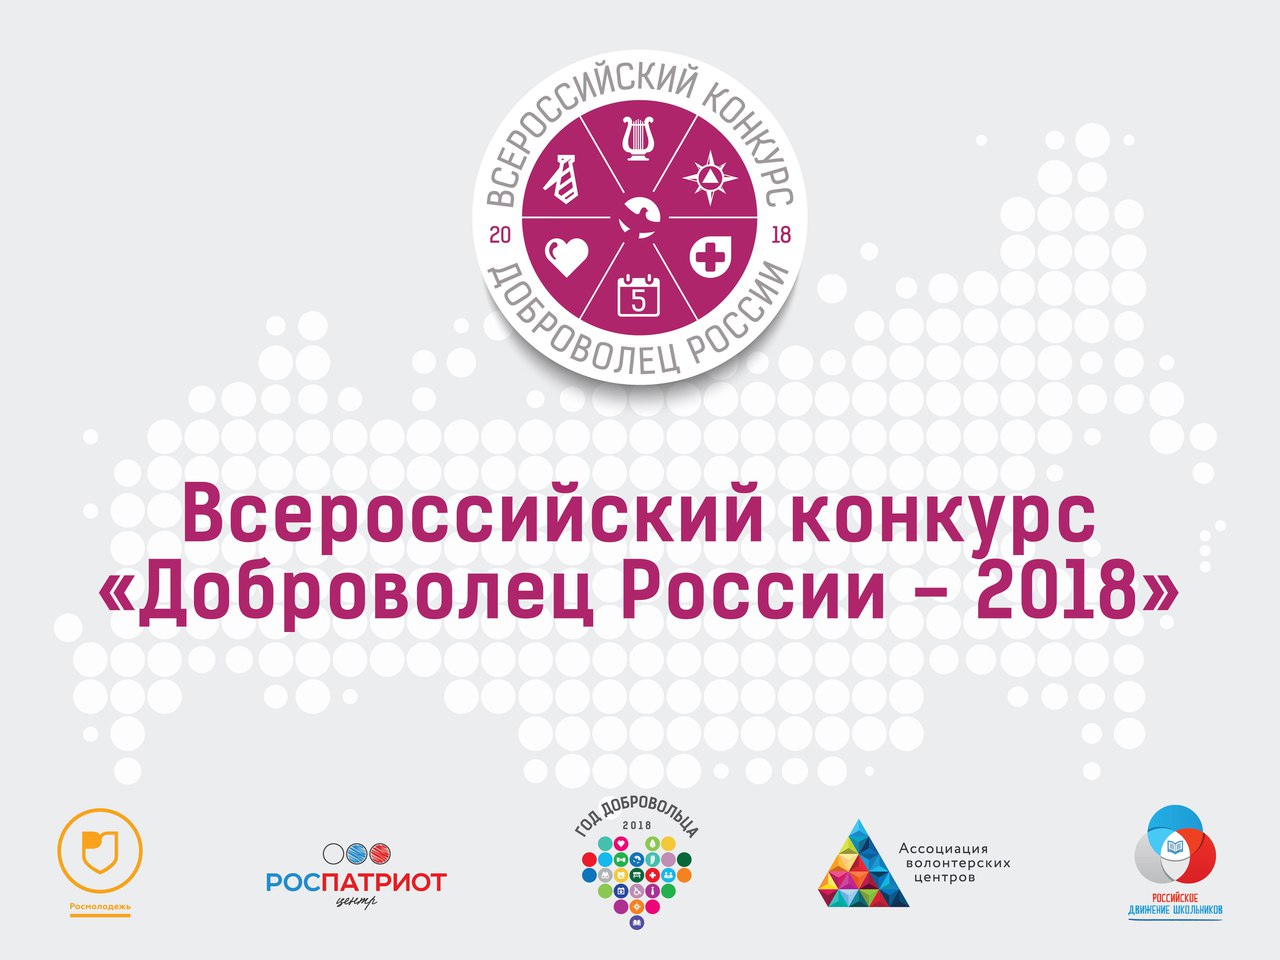 21-22 сентября пройдет очный региональный этап конкурса «Доброволец России 2018» (Изображение с сайта dagmintrud.ru) 